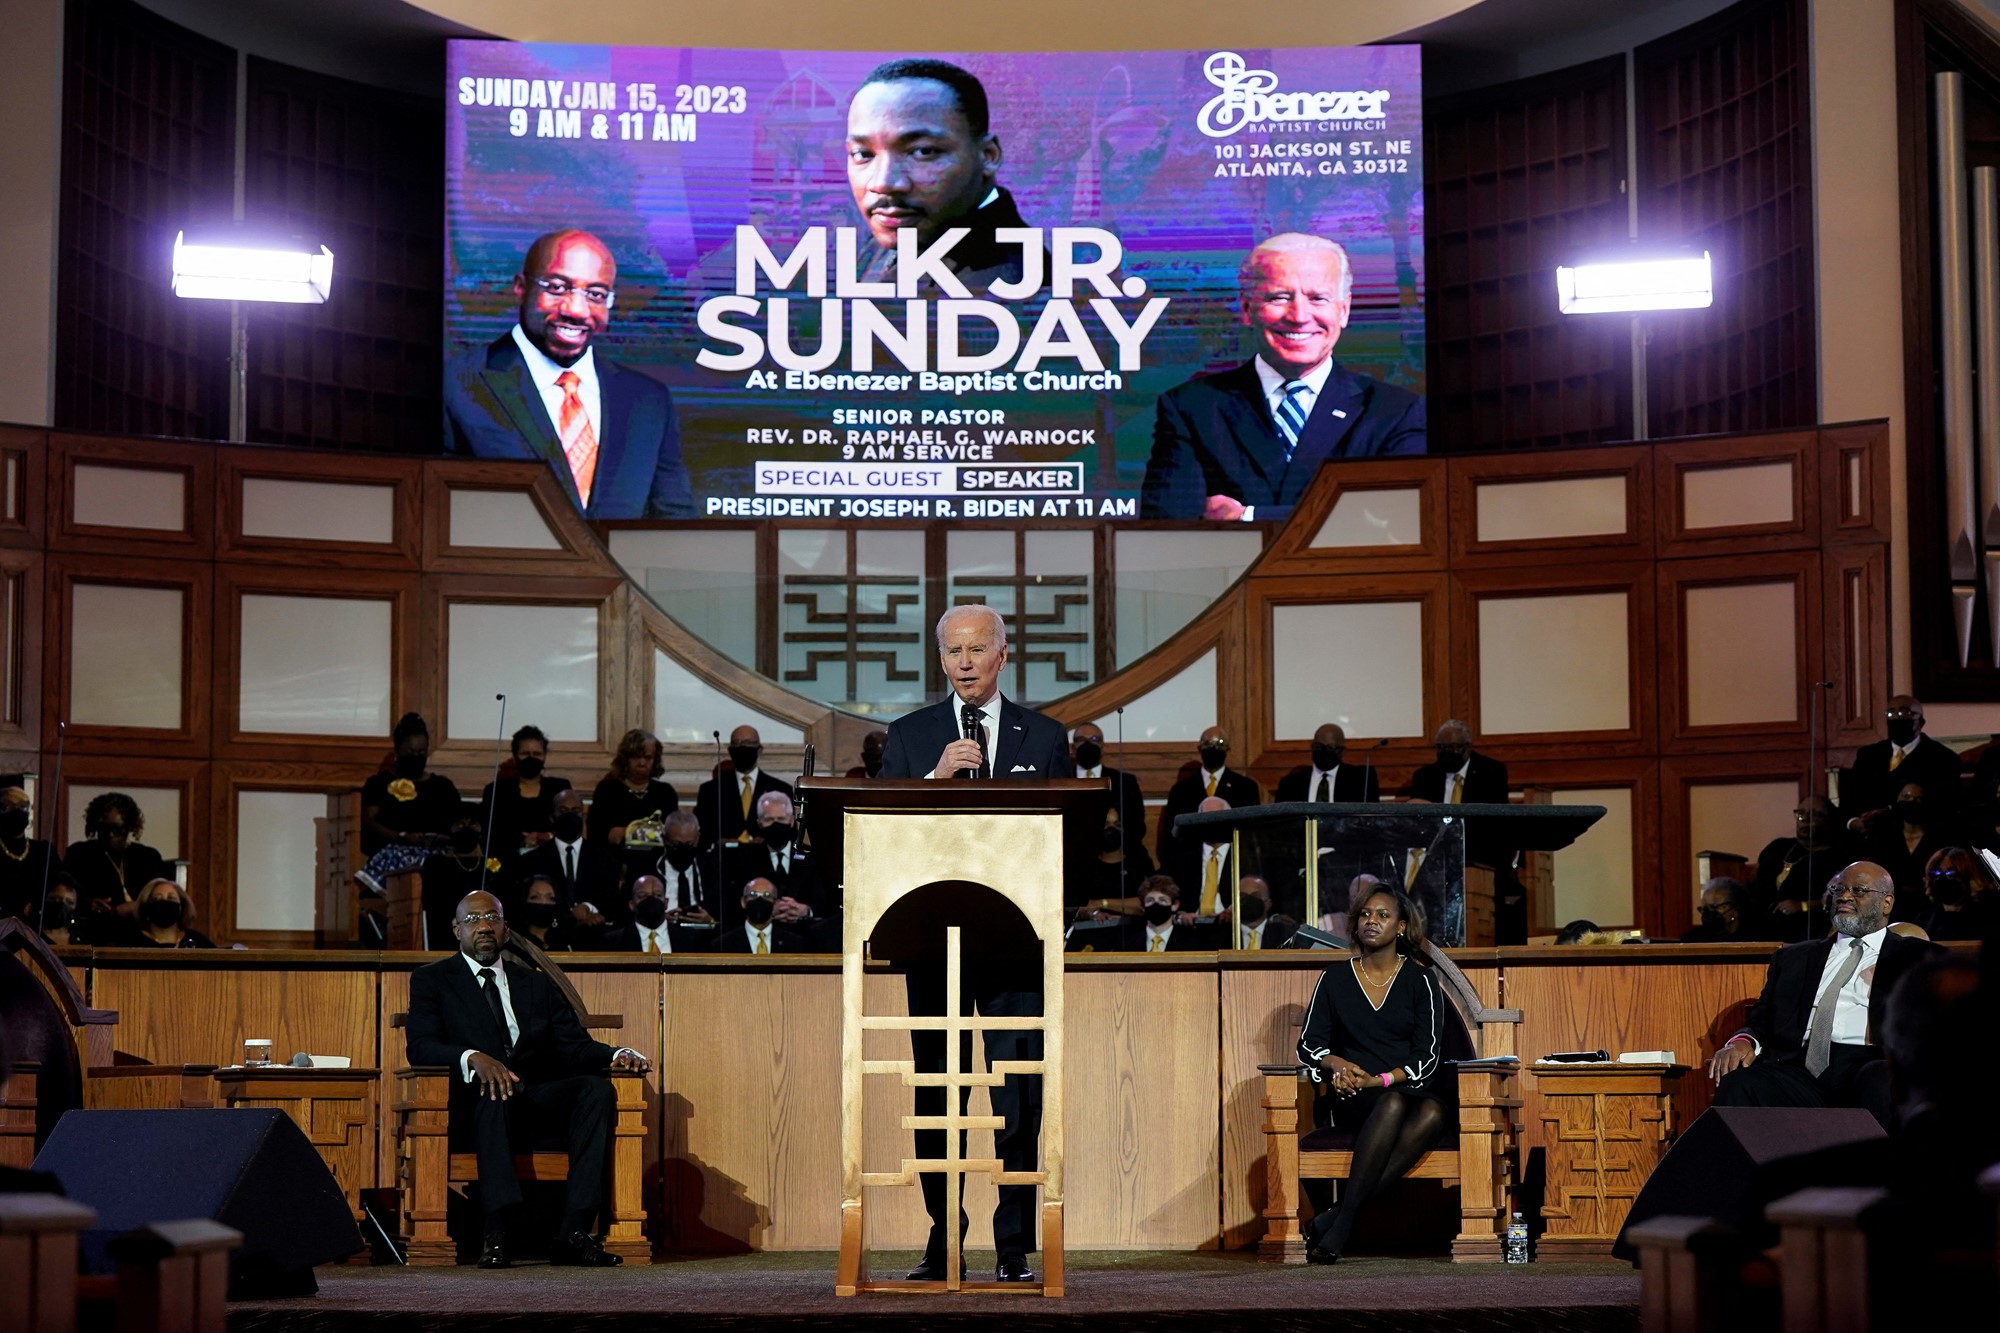 Biden habla en una iglesia con una pantalla de plasma encima de él leyendo el domingo de Martin Luther King Jr.